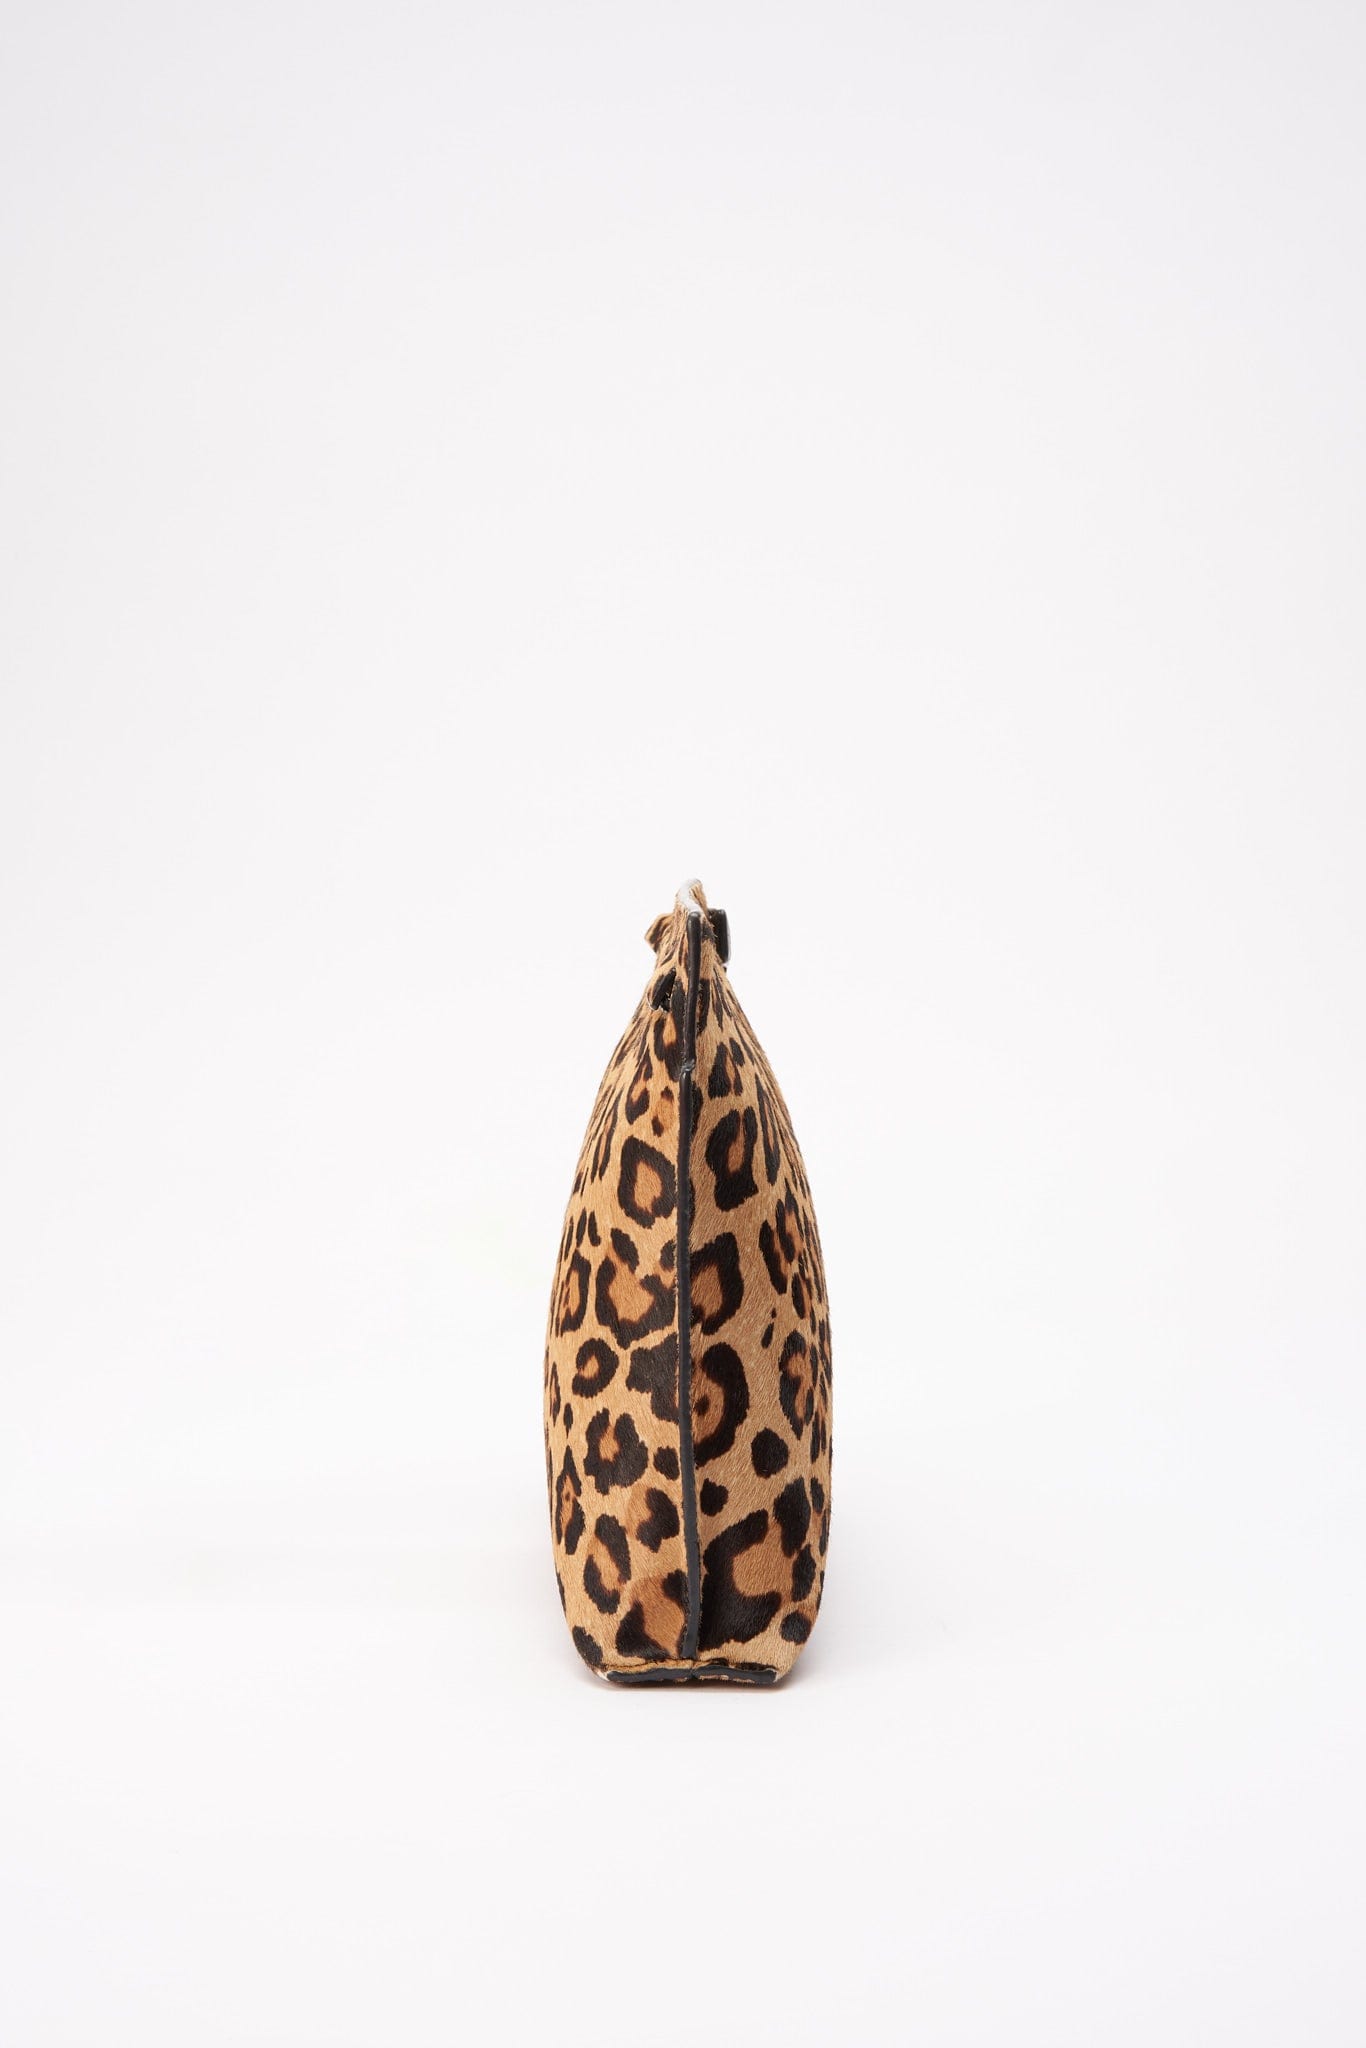 Vintage Loewe Leopard Calf Hair Clutch Bag